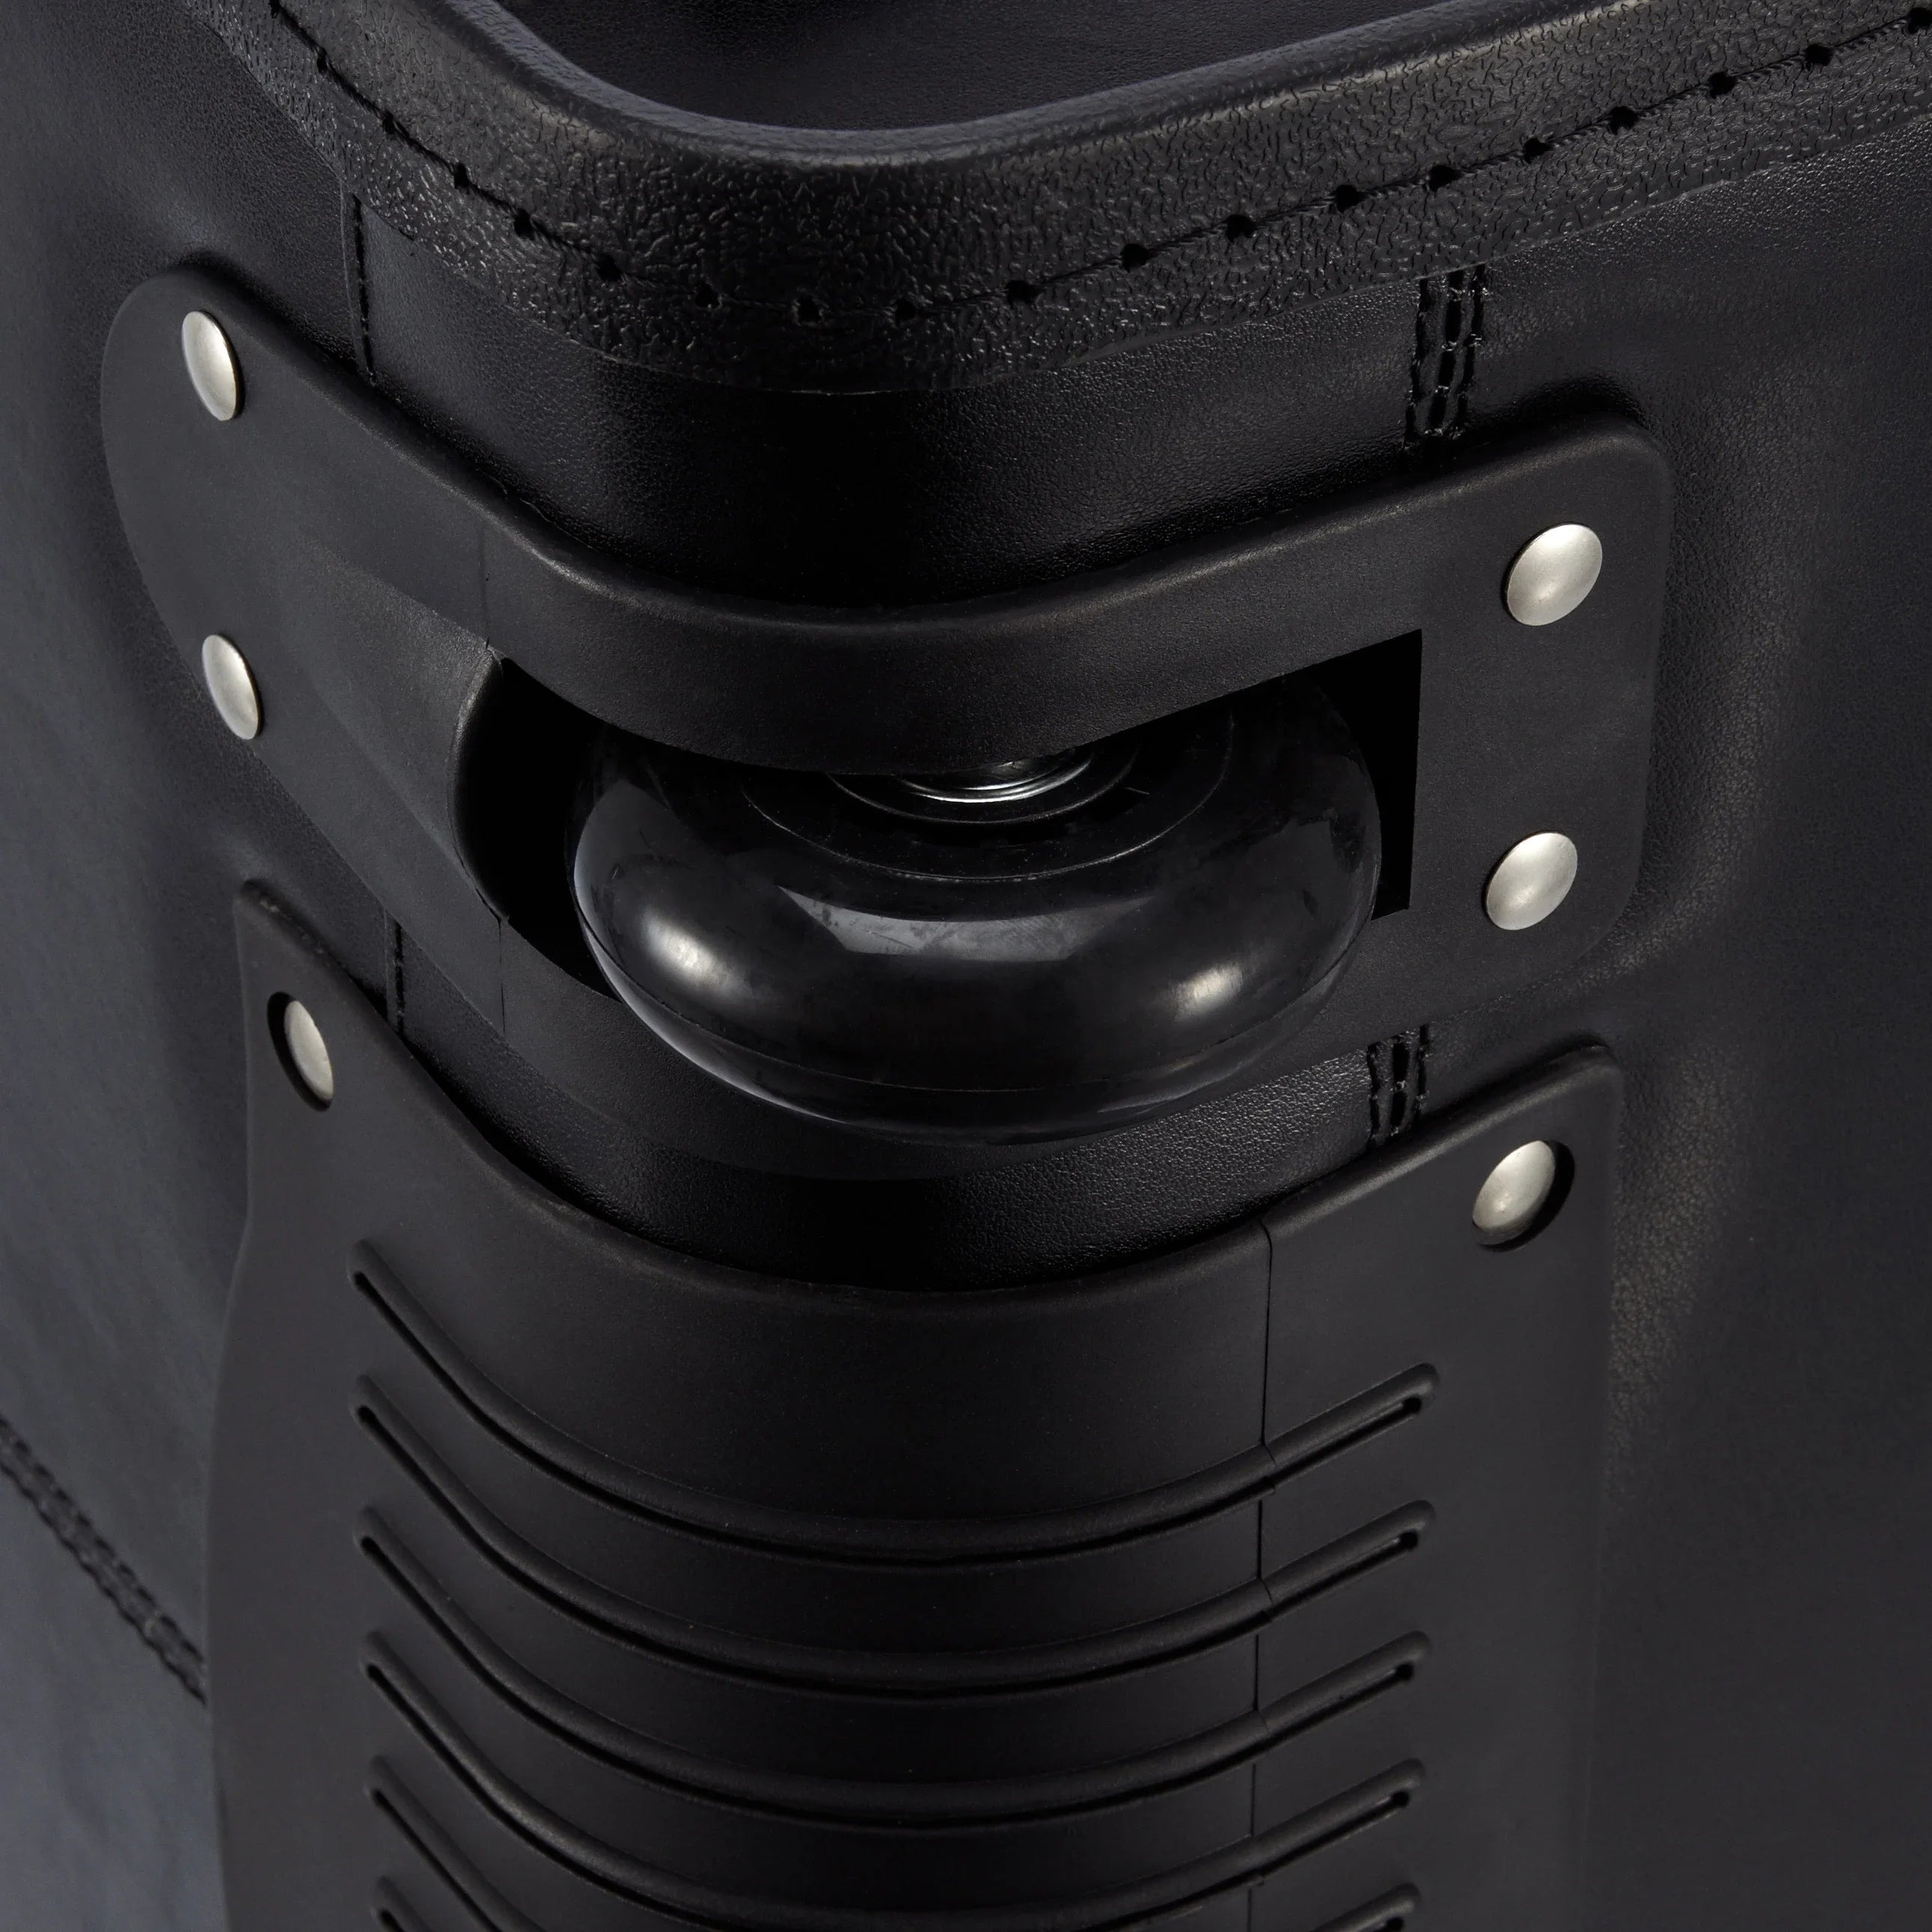 Dermata business pilot case on wheels leather 45 cm - black